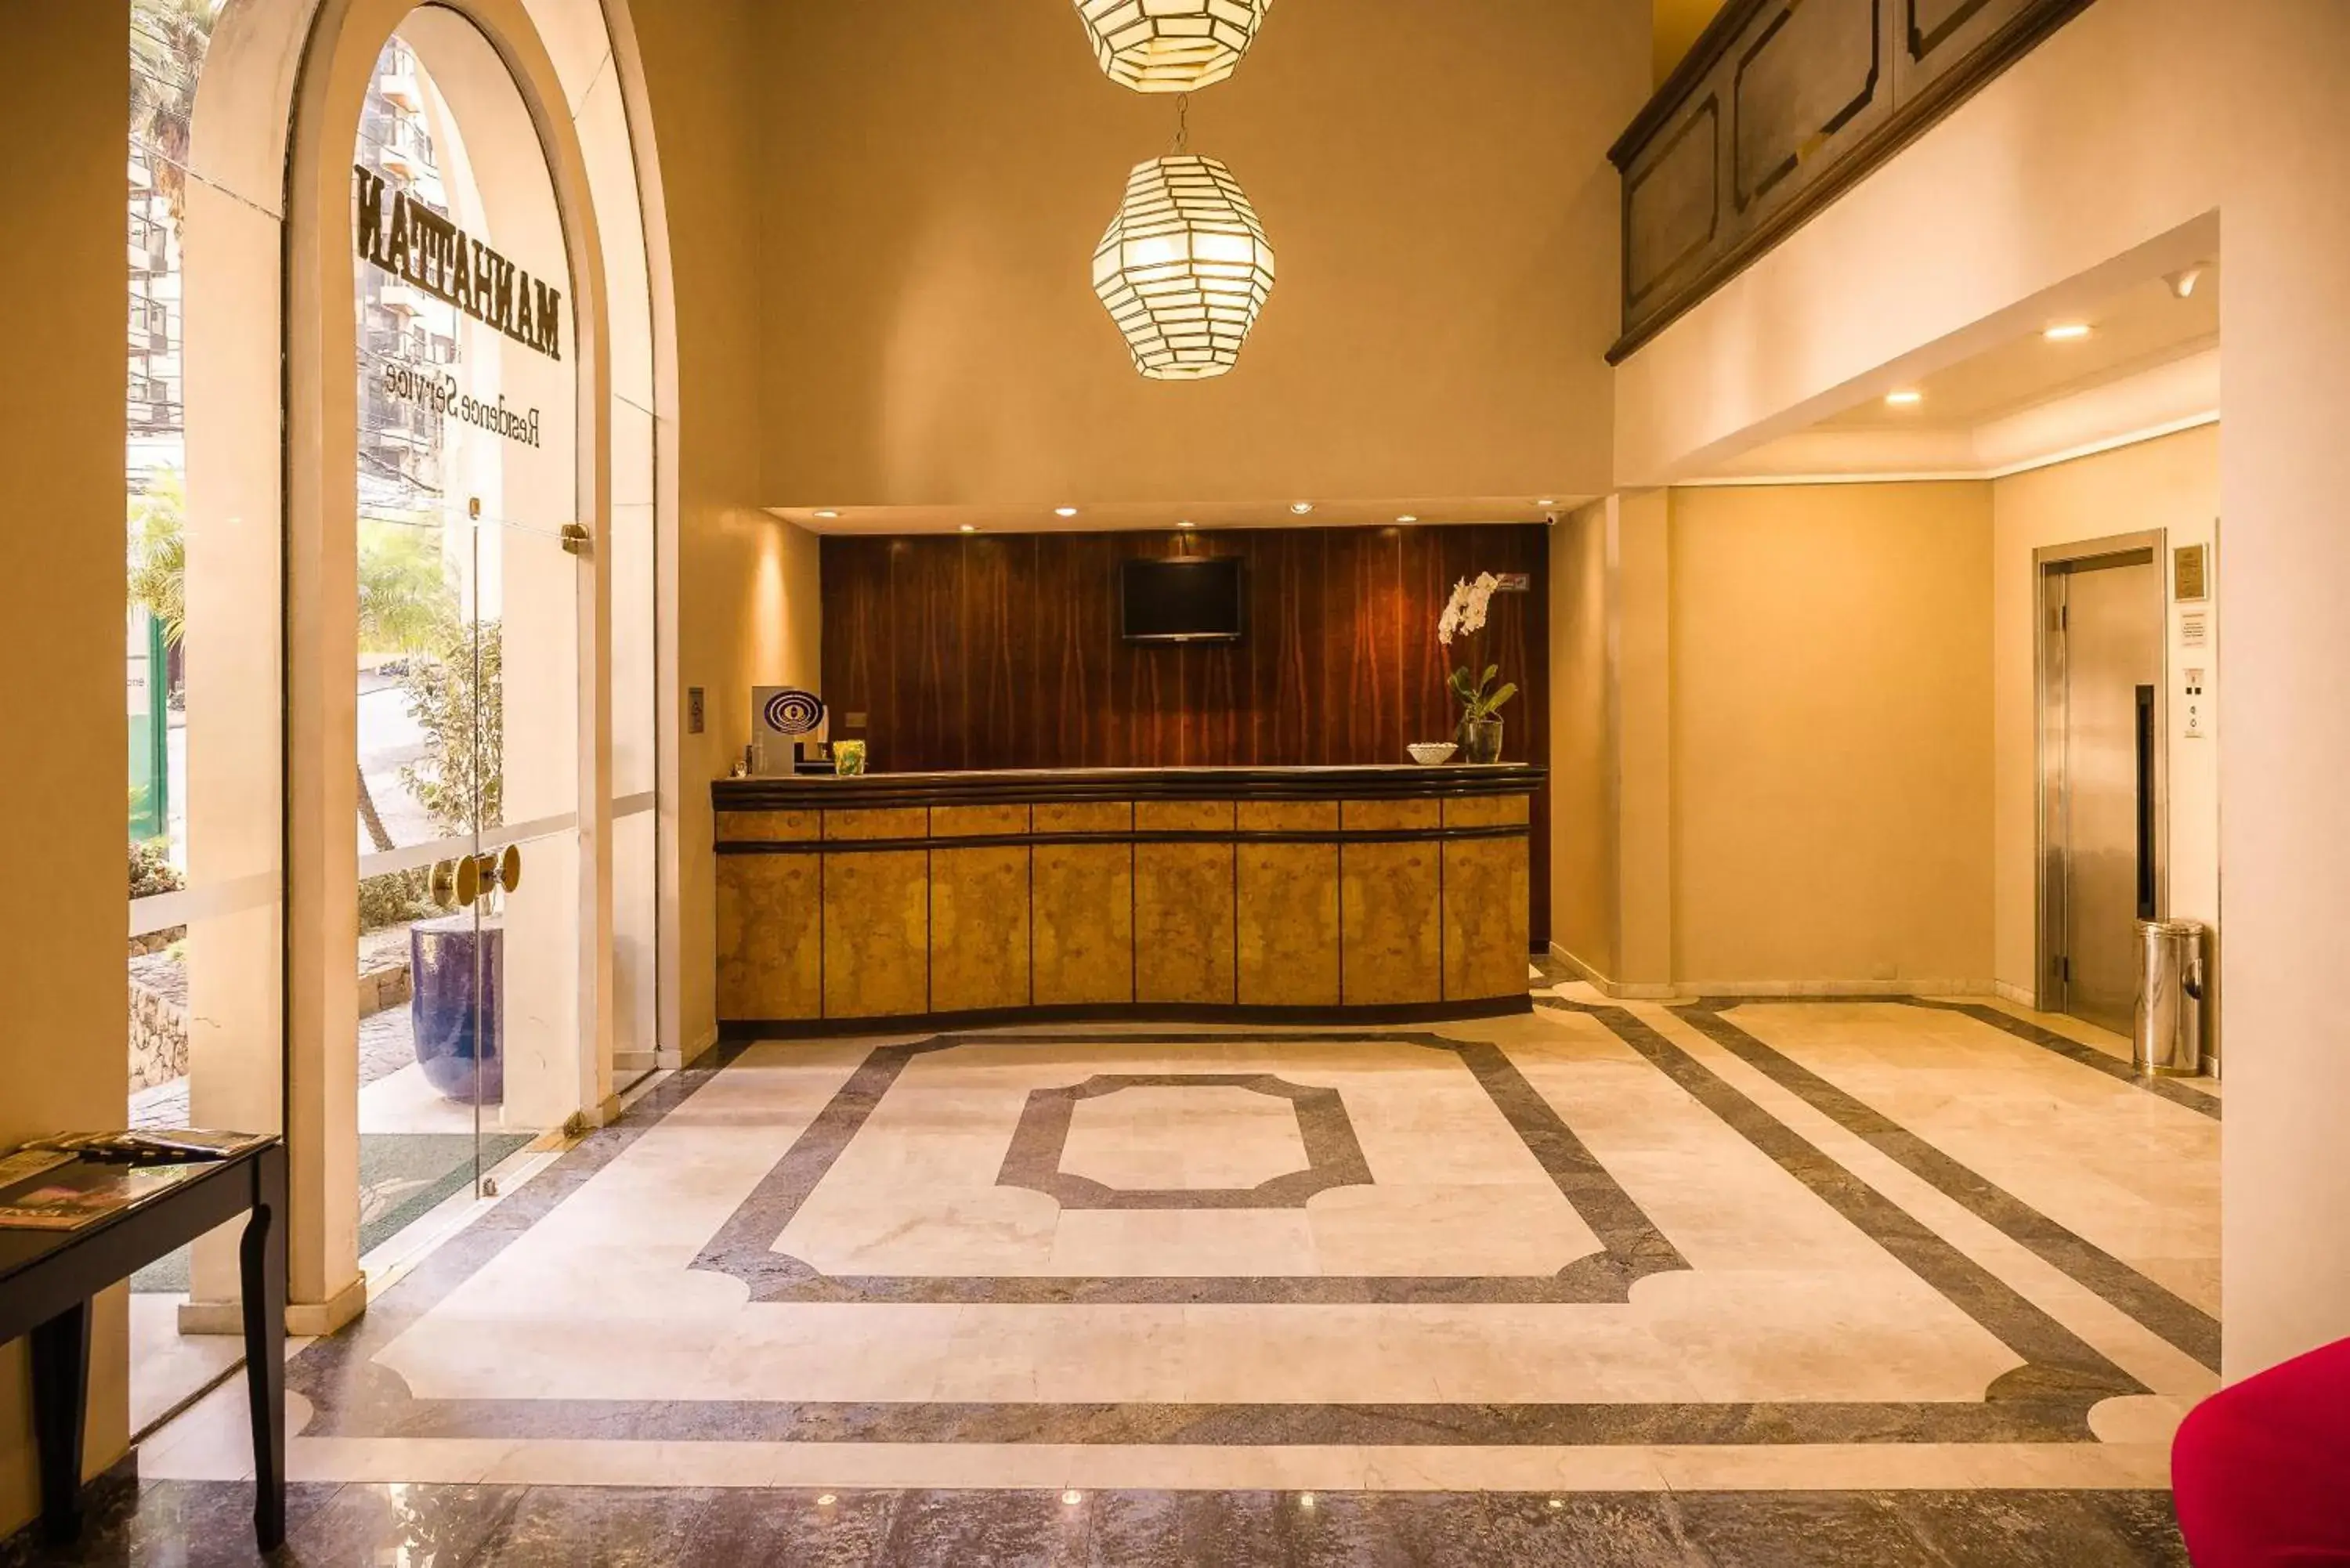 Lobby or reception, Lobby/Reception in Matiz Manhattan